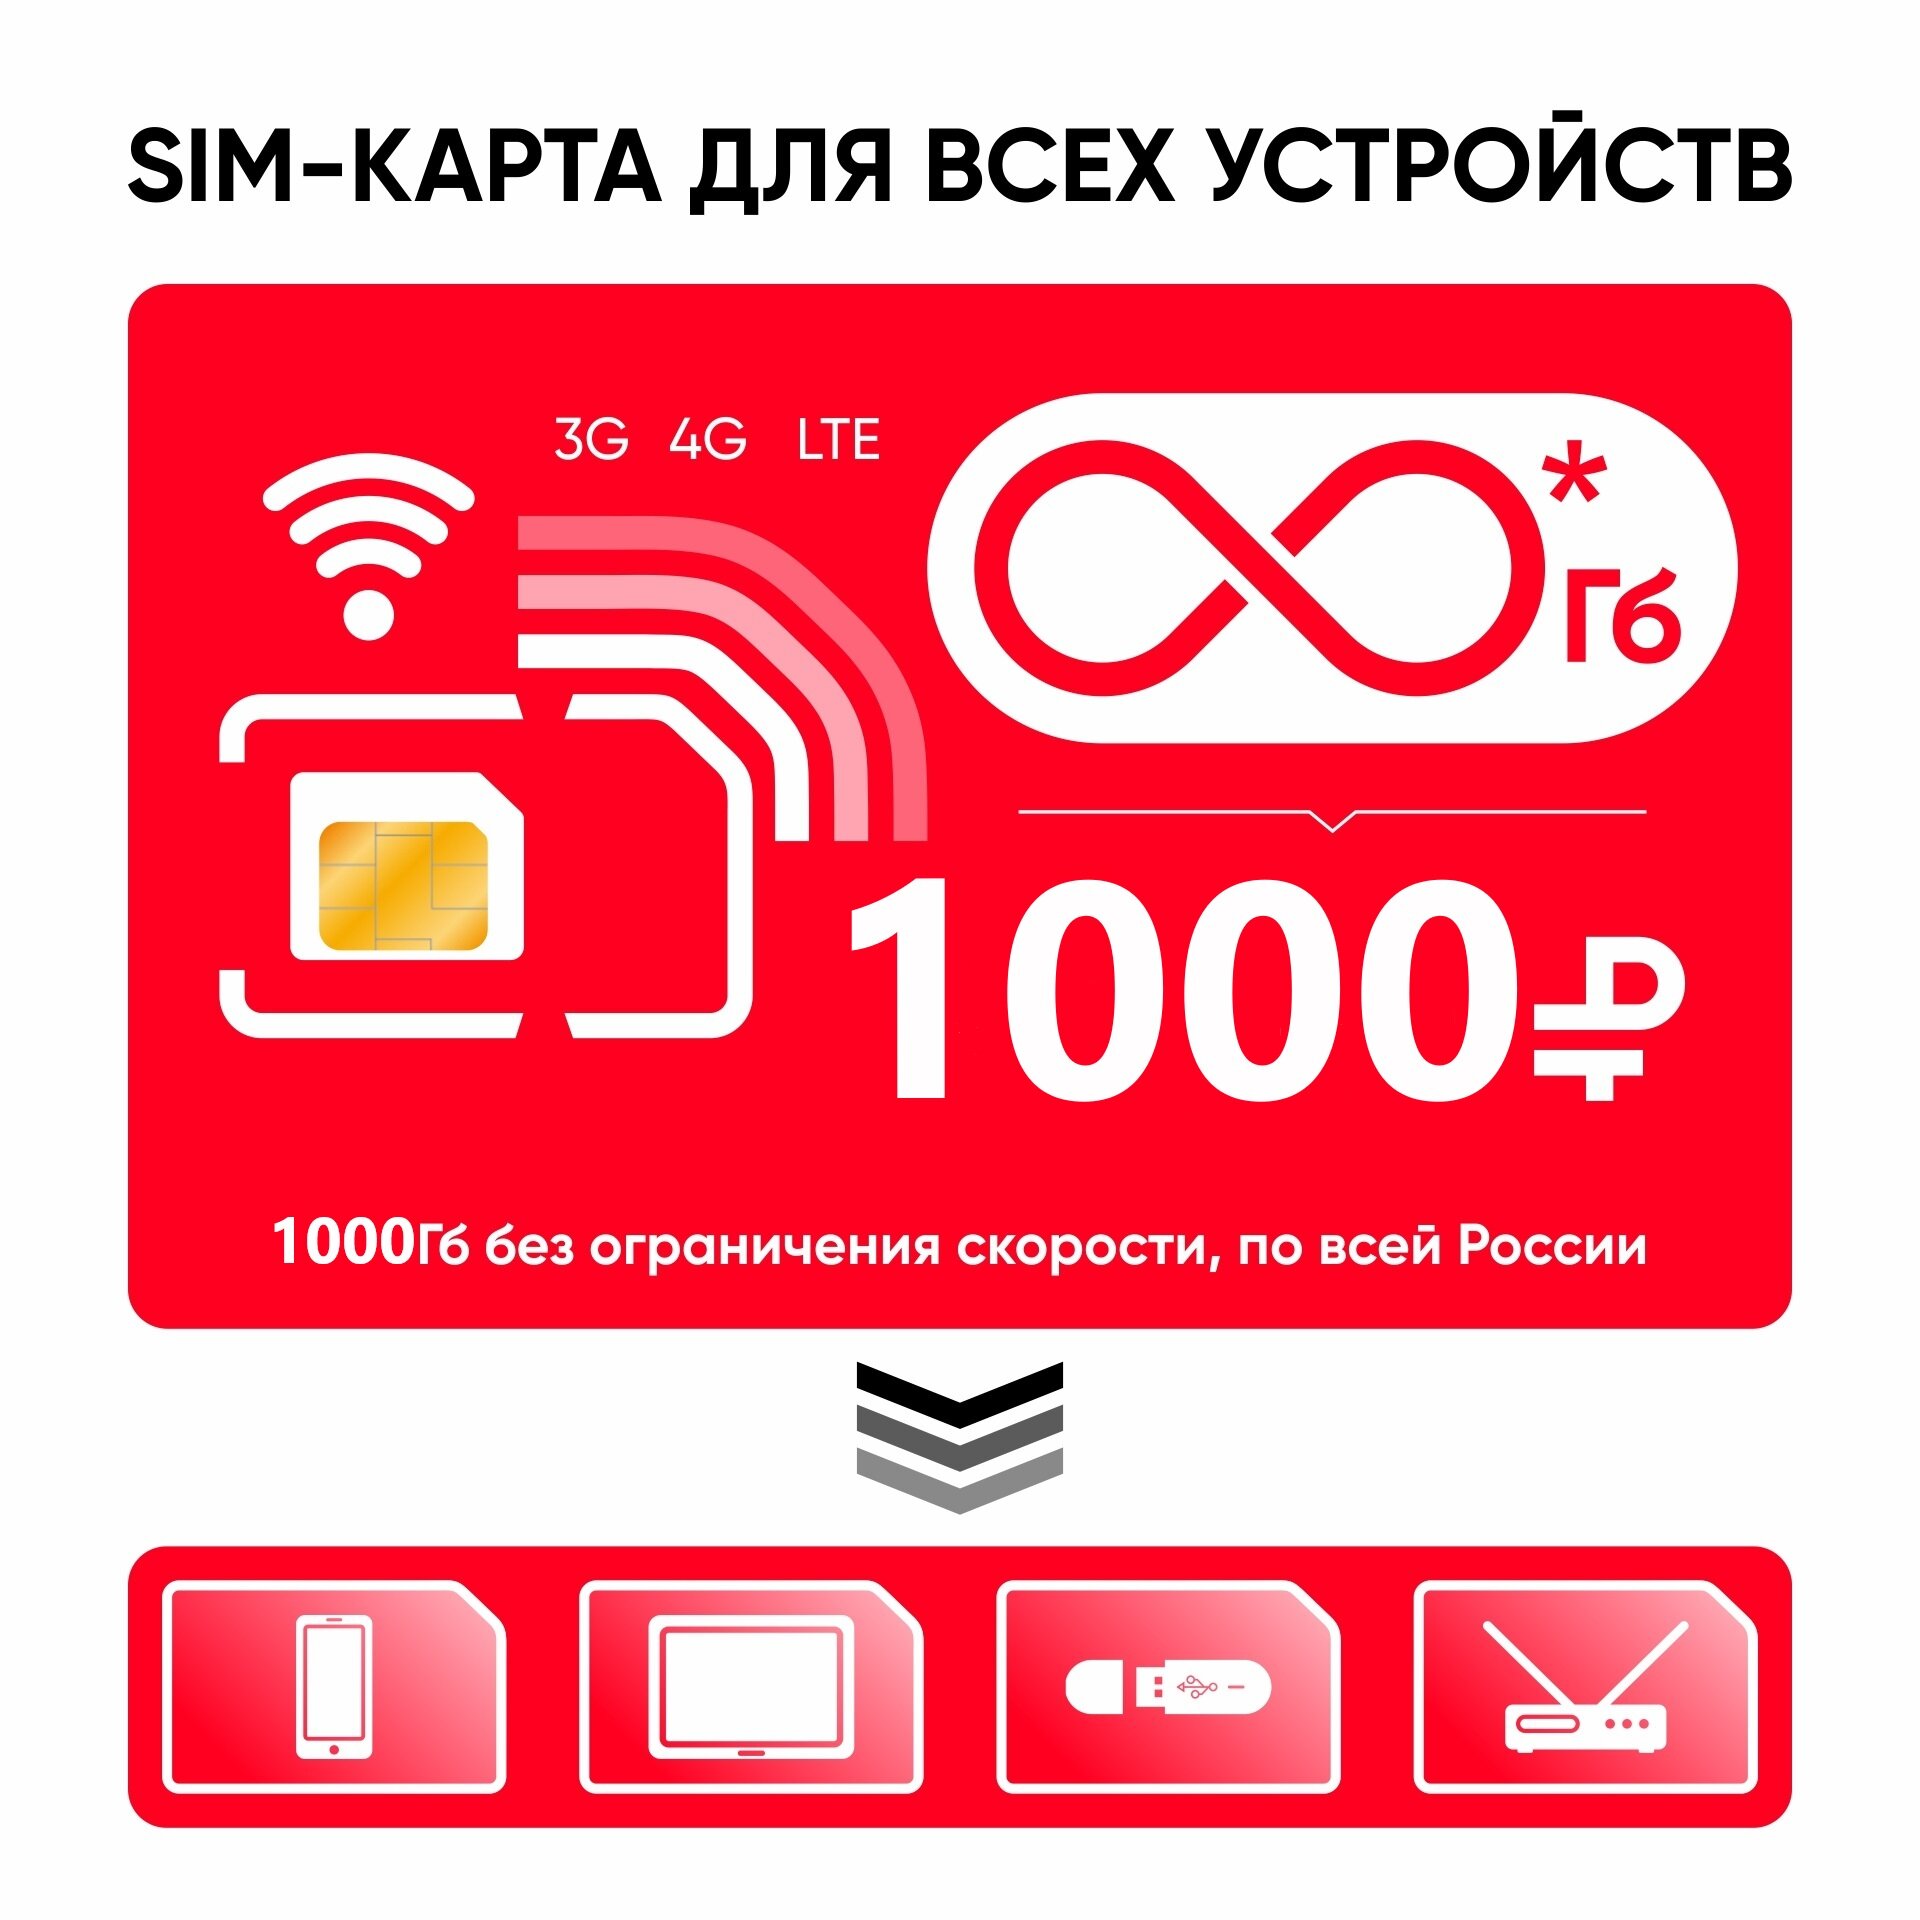 SIM-карта для всех устройств безлимитный интернет и раздача